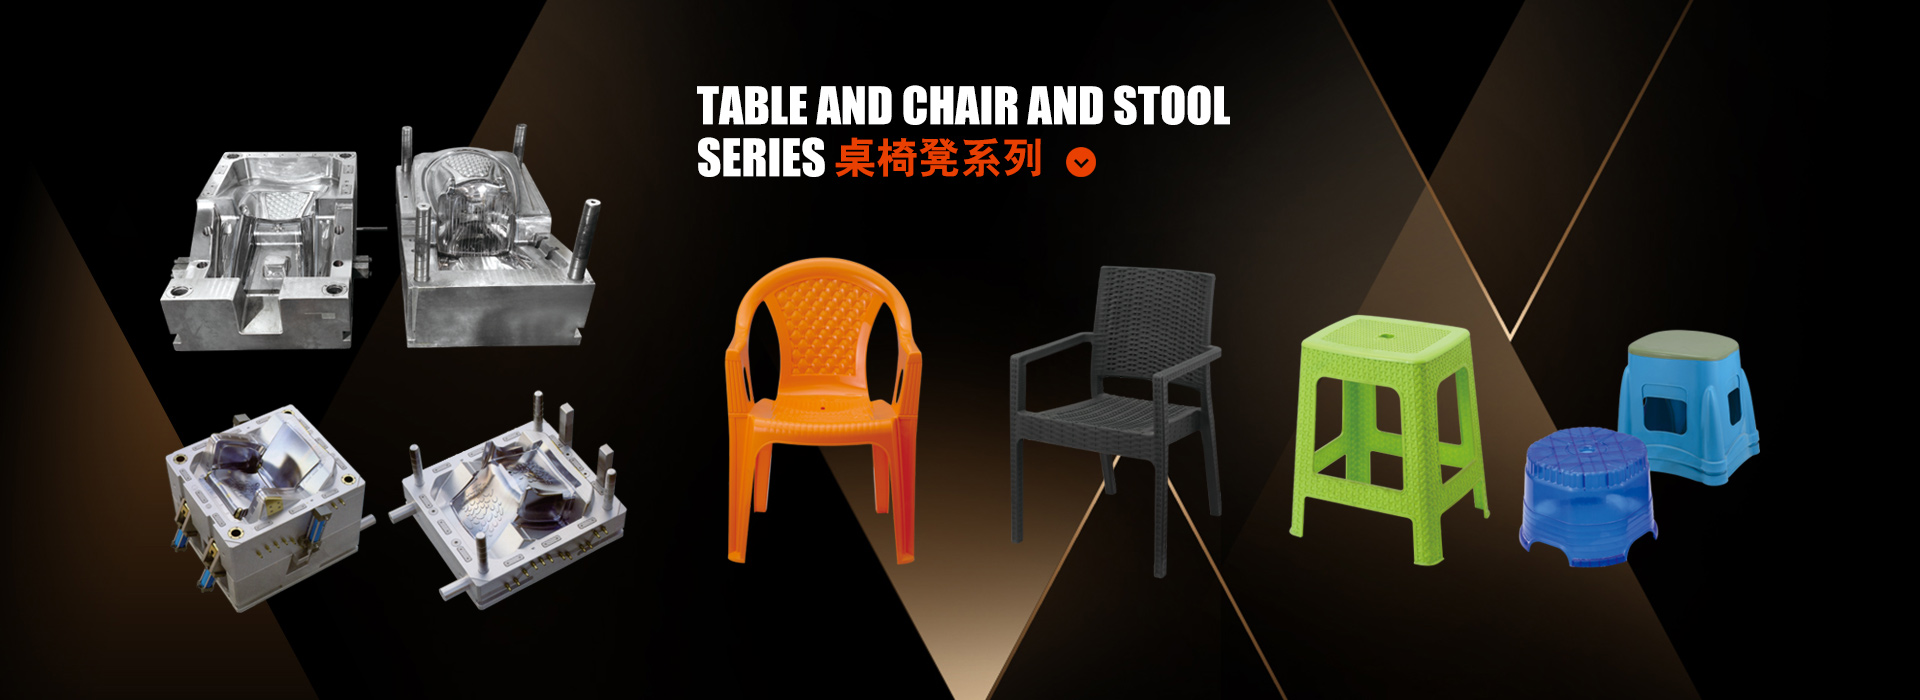 桌椅↓凳模具系列